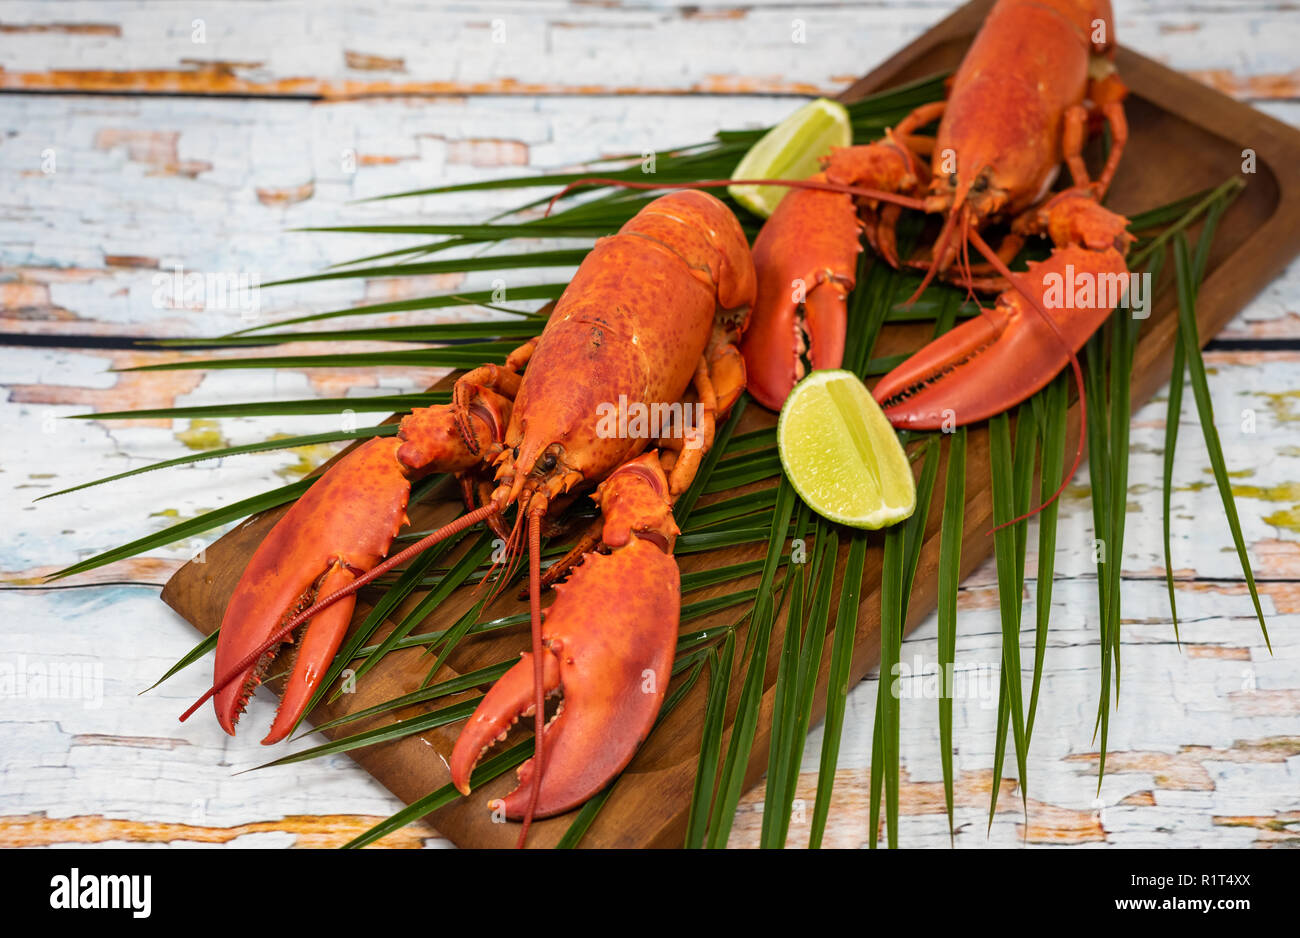 Gros plan de homard frais à la vapeur avec herbes dans une assiette grise photo Banque D'Images